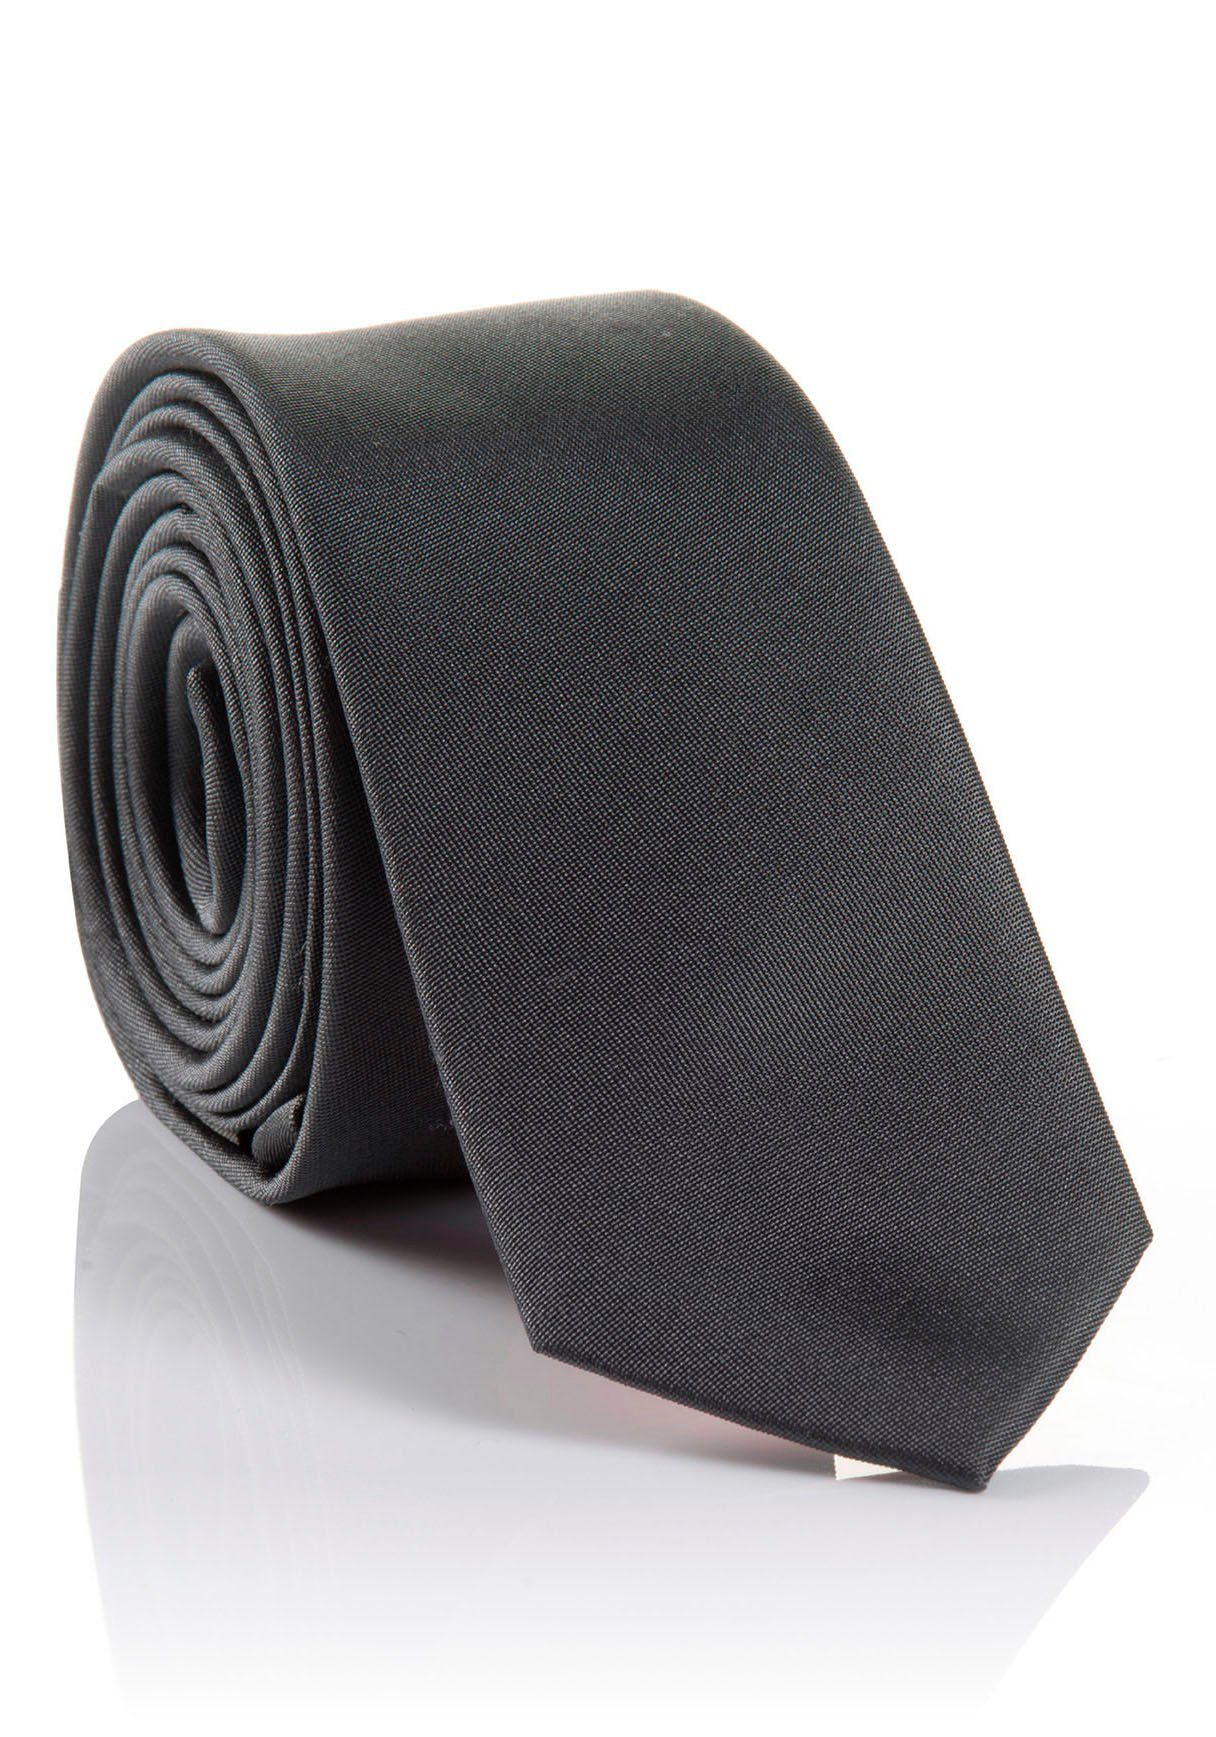 MONTI Krawatte LORENZO Hochwertig verarbeitete Seidenkrawatte mit hohem Tragekomfort grey | Breite Krawatten